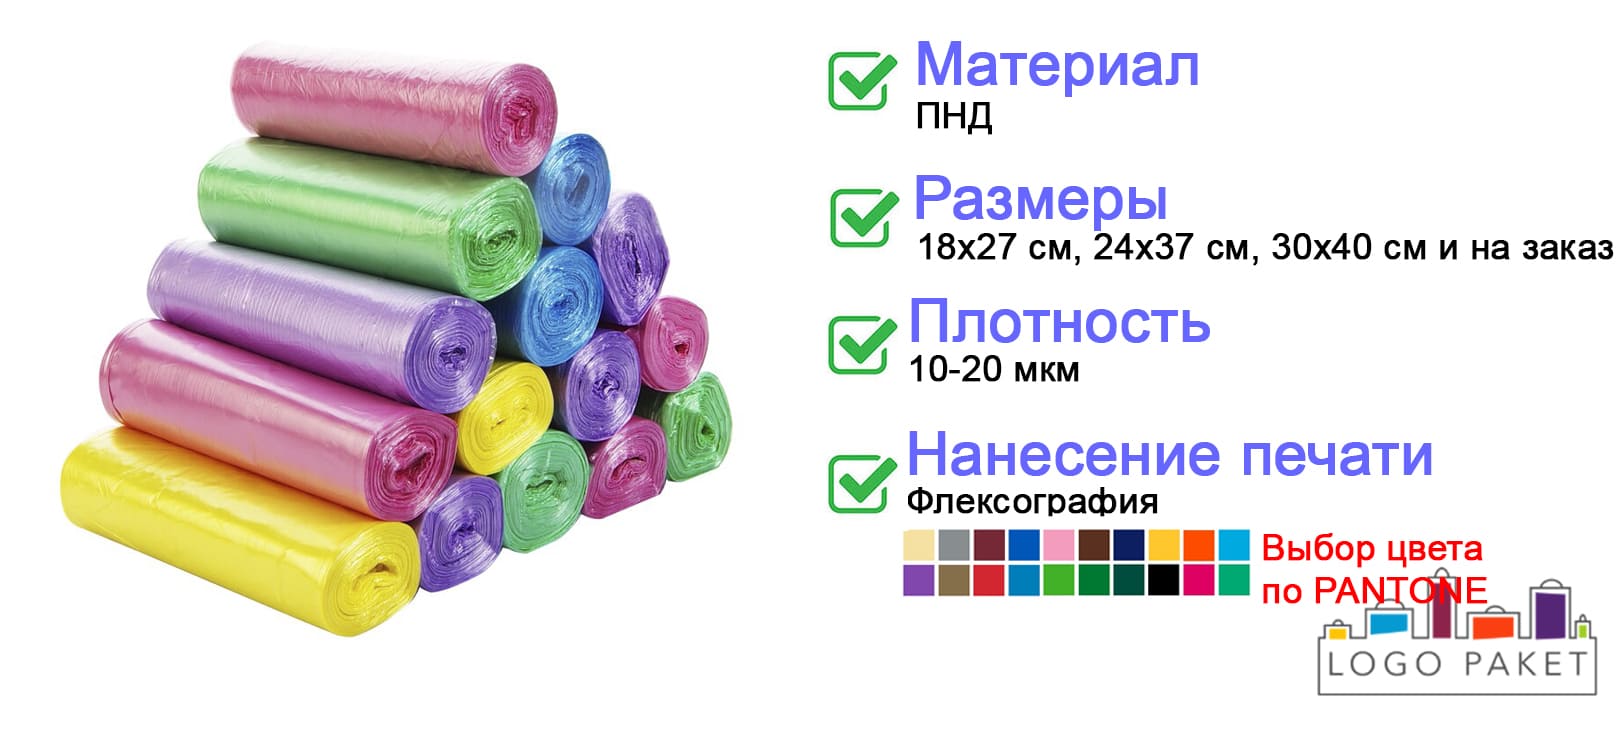 Цветные фасовочные пакеты инфографика